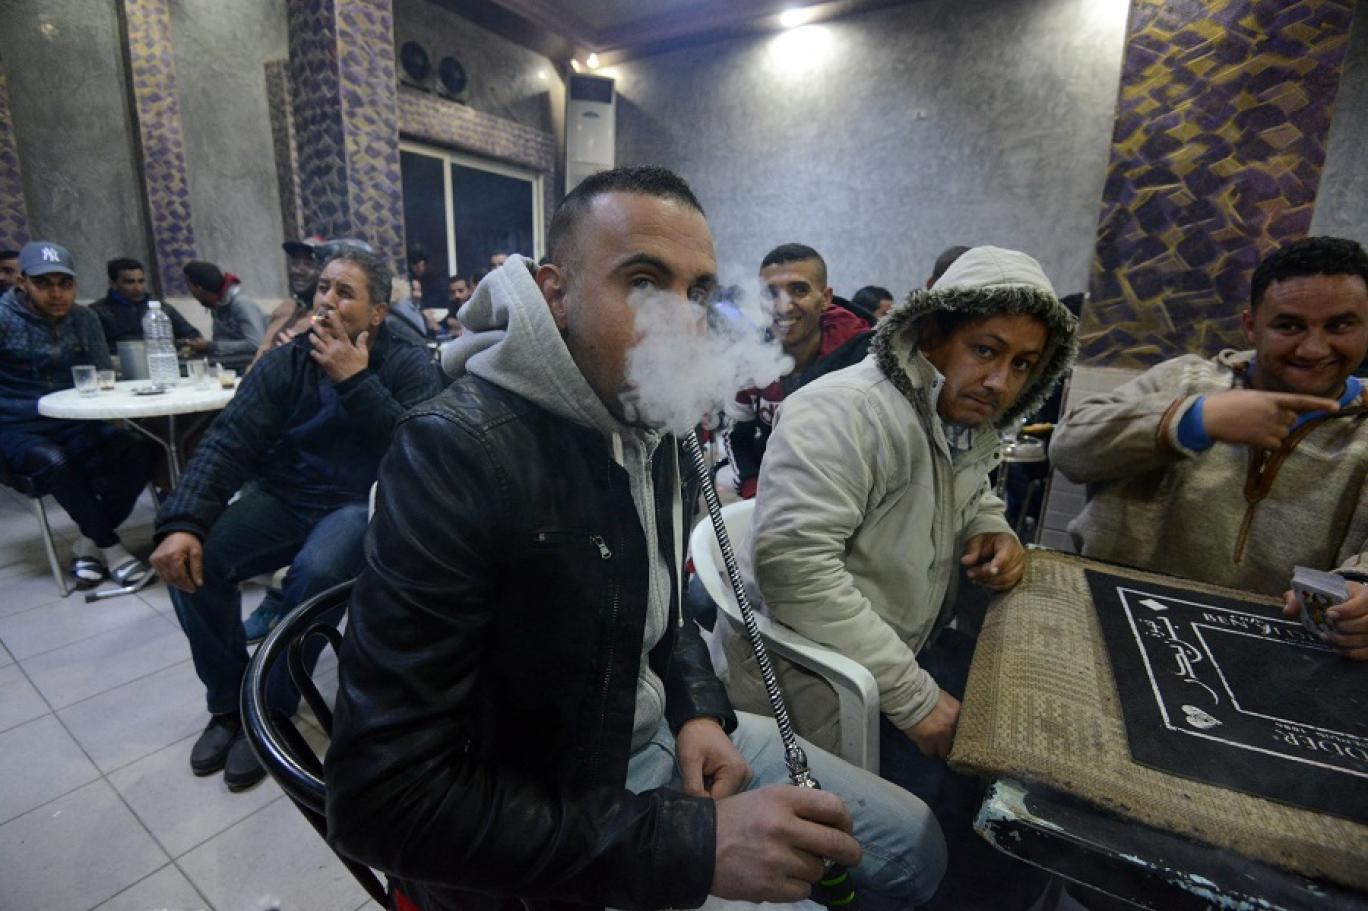 تونس الأولى عربيا في نسبة التدخين وتسجيل 13 ألف وفاة سنويا